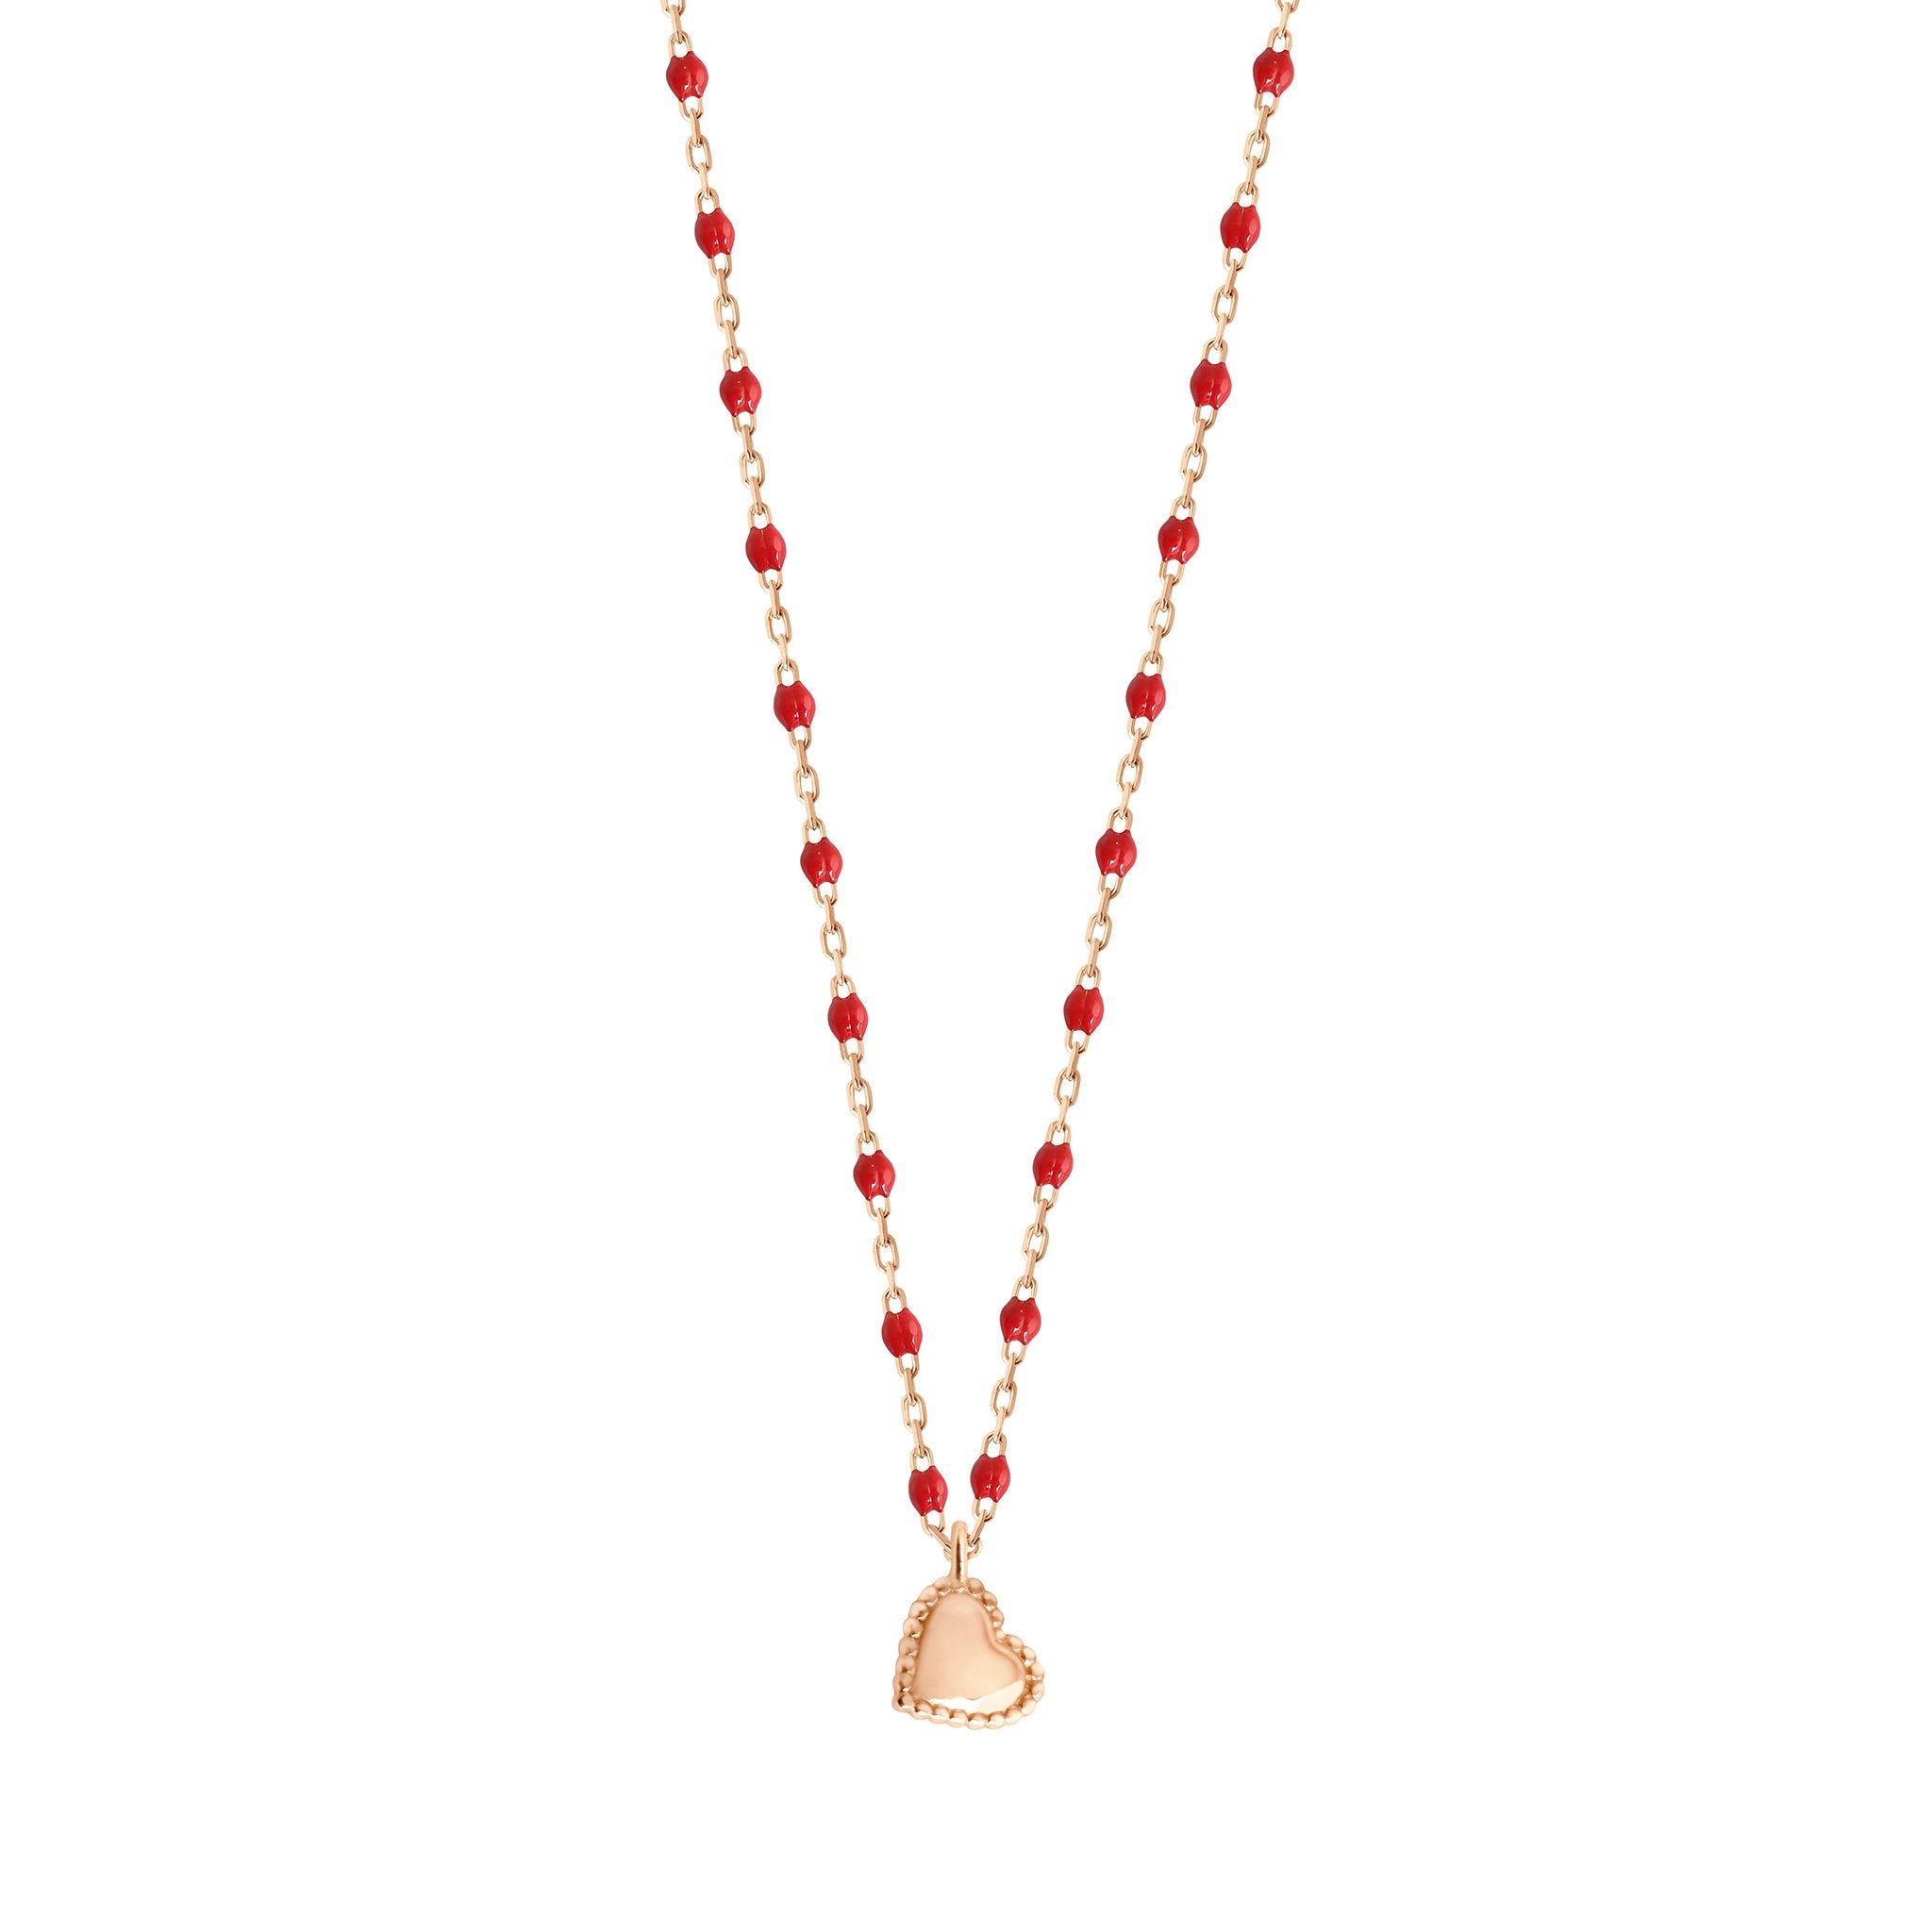 Gigi Clozeau - Collier Lucky Coeur, or rose et mini perles de résine coquelicot, 40 cm